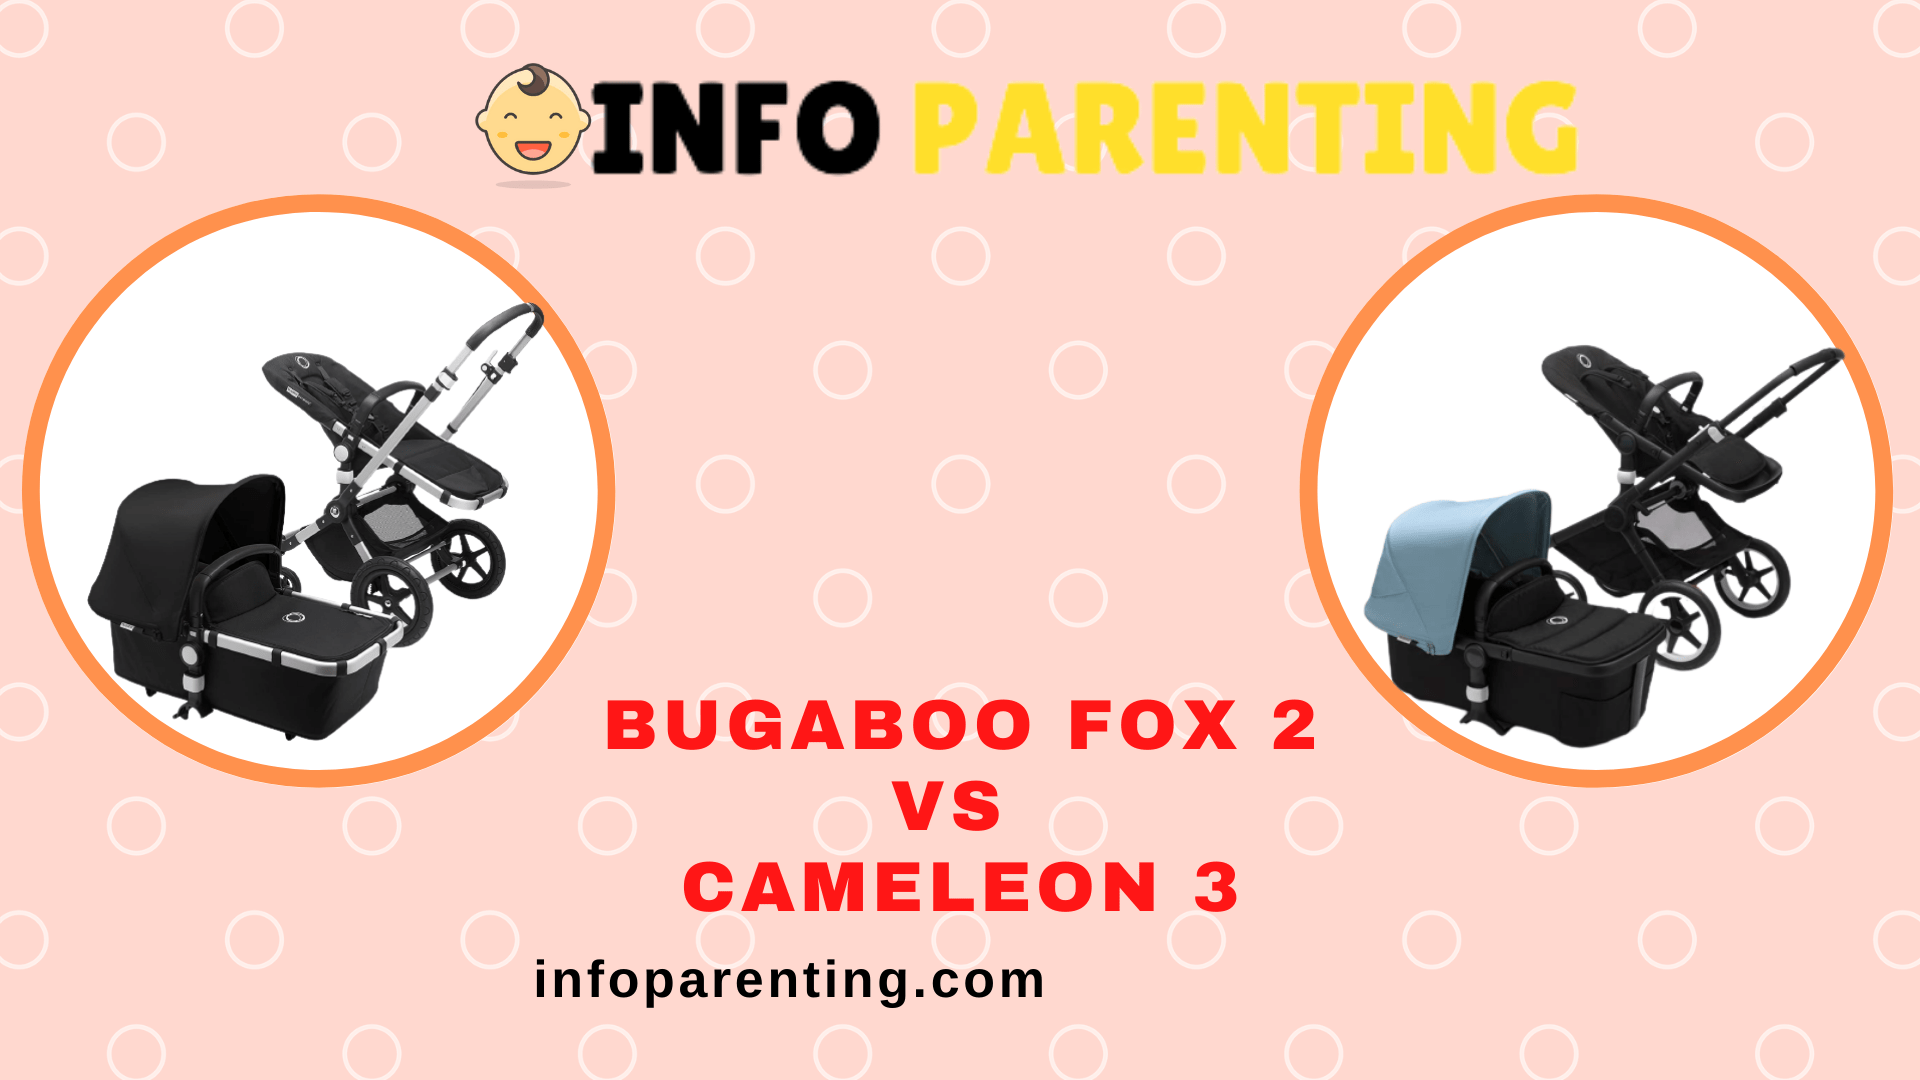 Bugaboo Fox 2 Vs Cameleon 3 - infoparenting